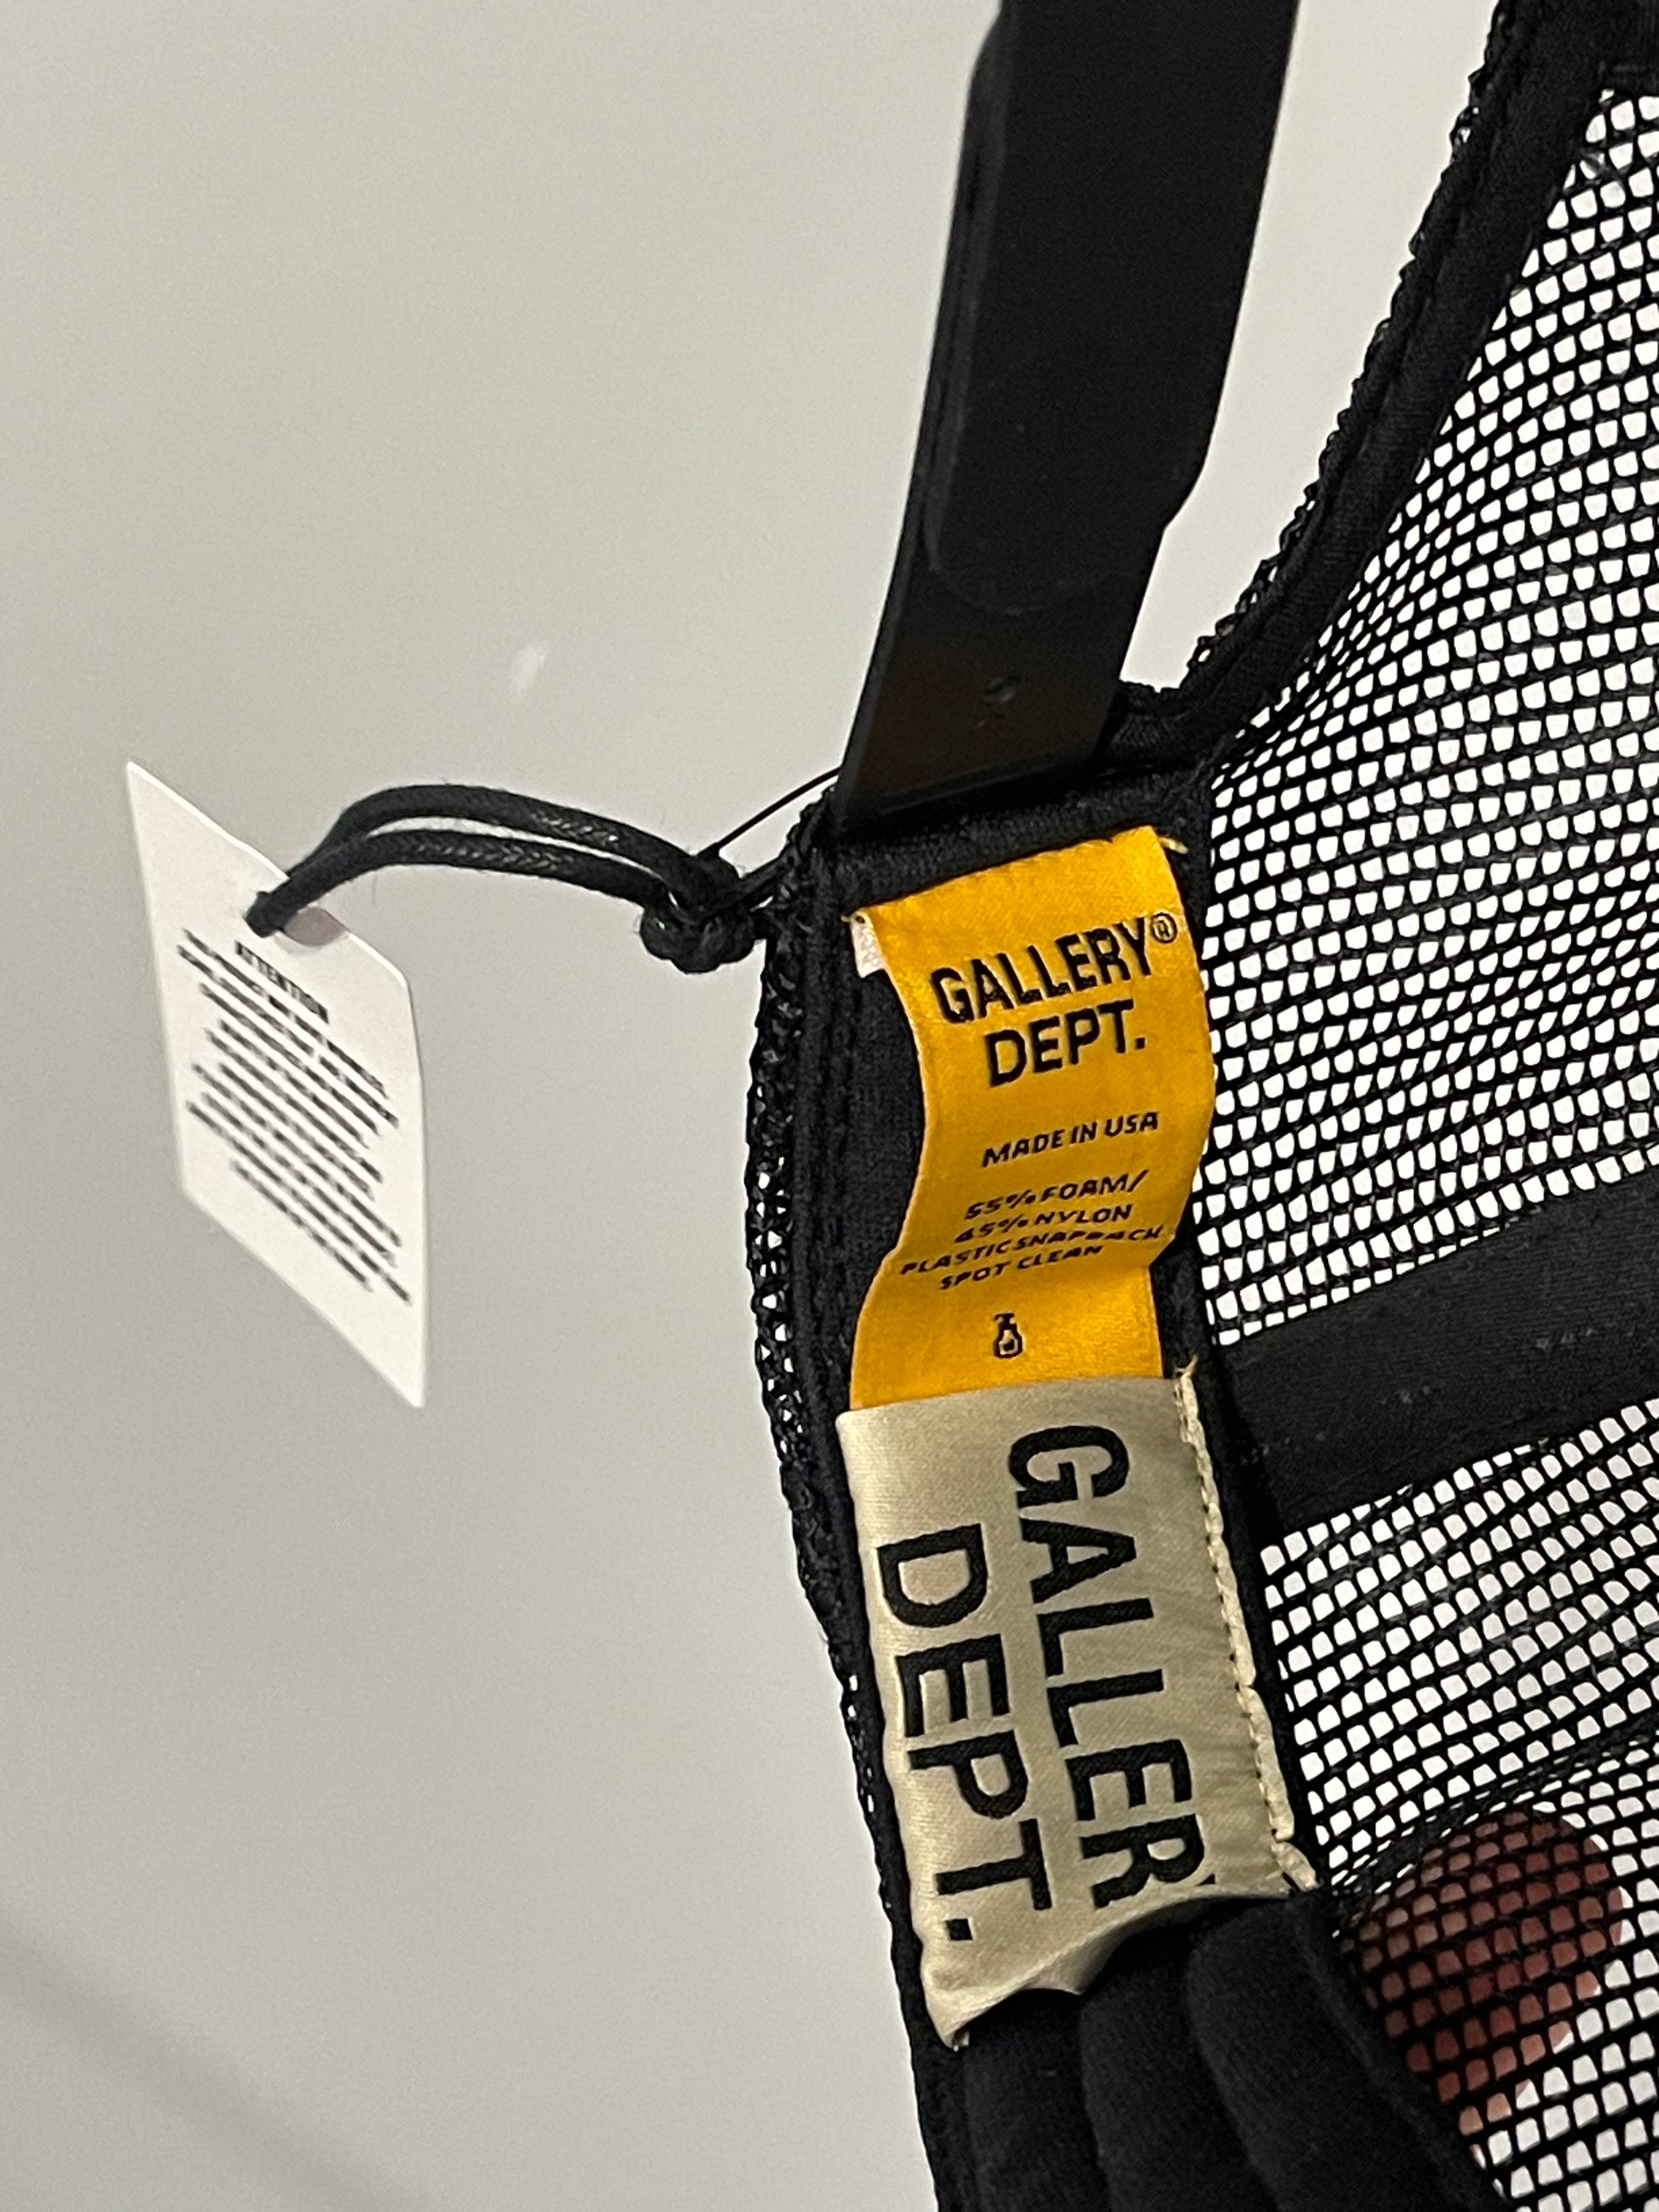 Gallery Dept. Fucked Up Trucker Hat Black, Hat - Sneakersbe Sneakers Sale Online